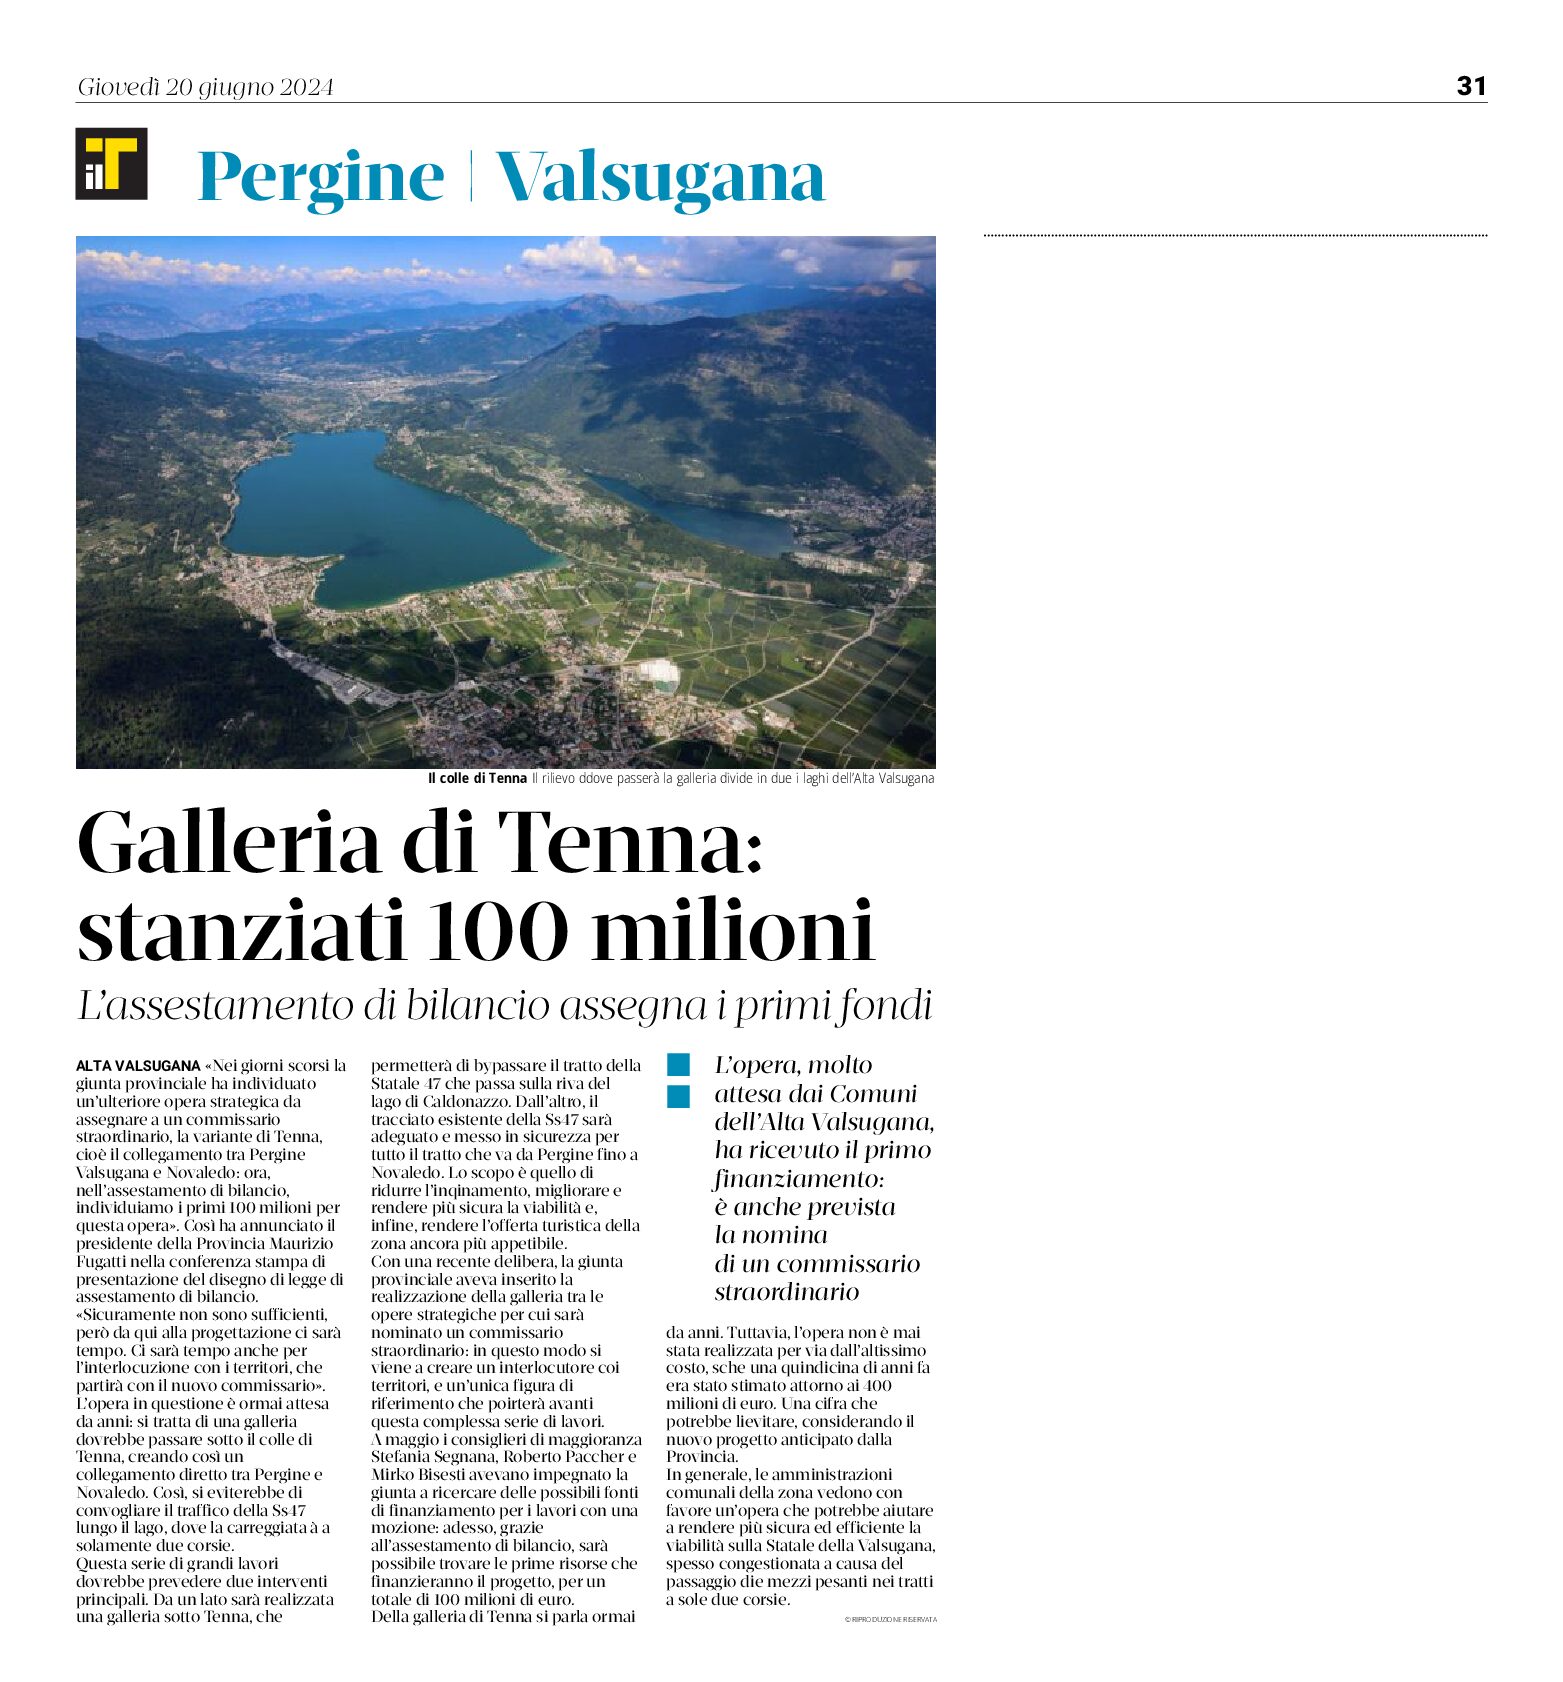 Galleria di Tenna: i primi fondi, stanziati 100 milioni